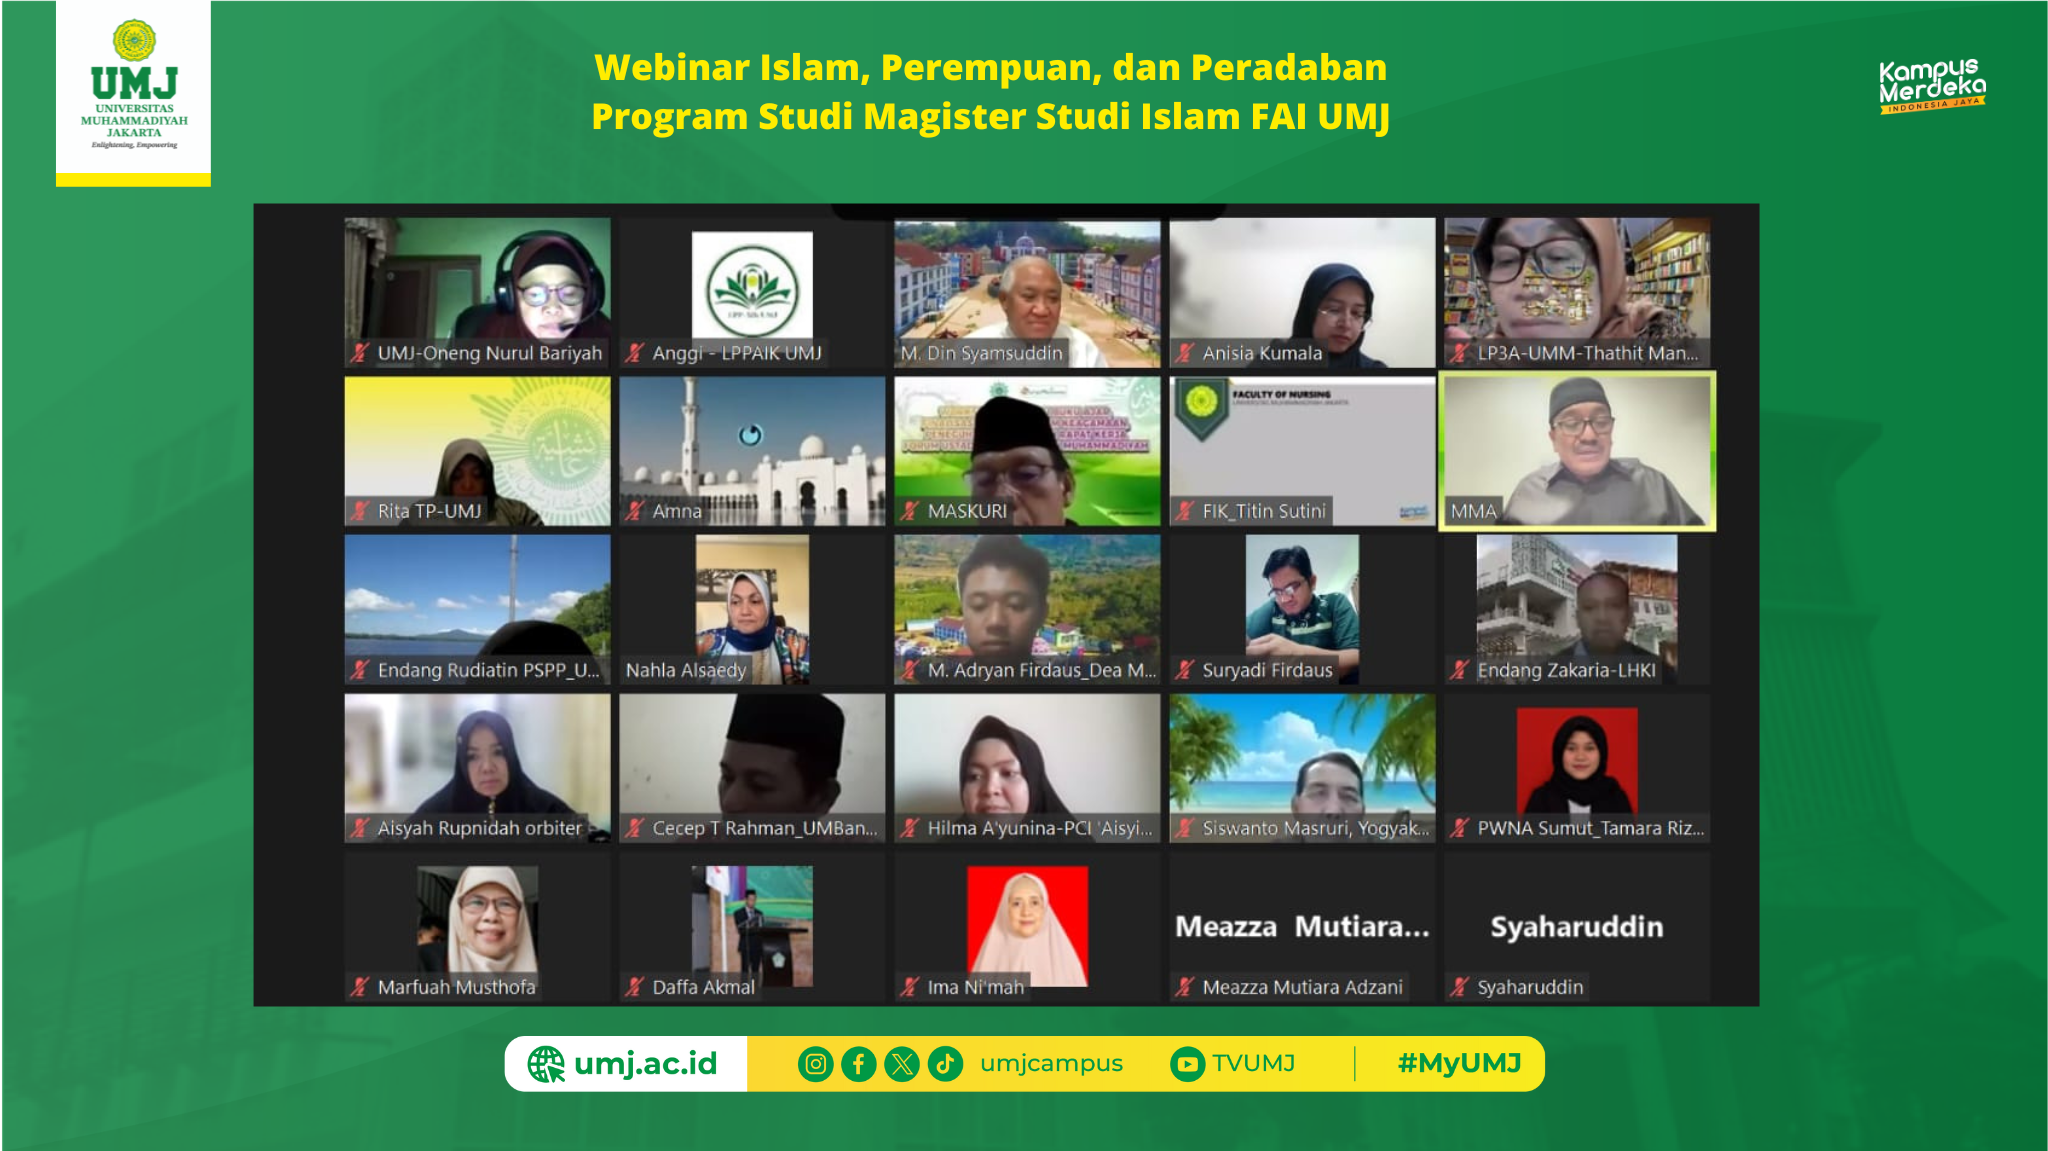 Webinar Islam, Perempuan, dan Peradaban Program Studi Magister Studi Islam FAI UMJ